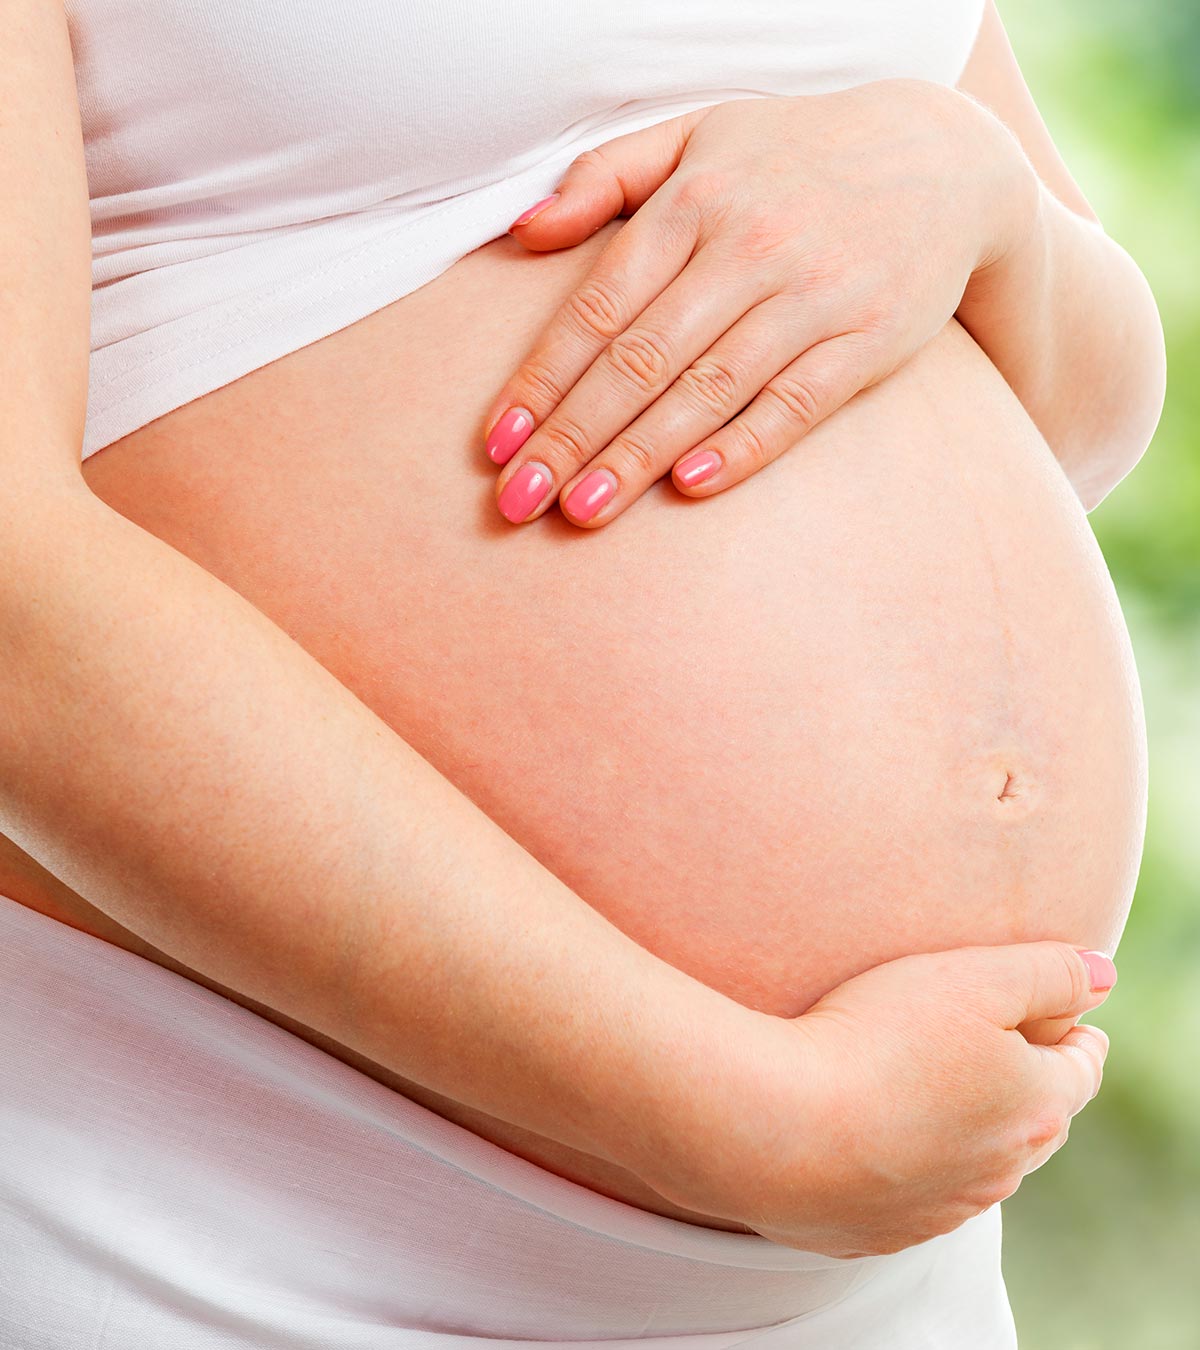 孕妇腹部尺寸表和形状:你应该知道的事情